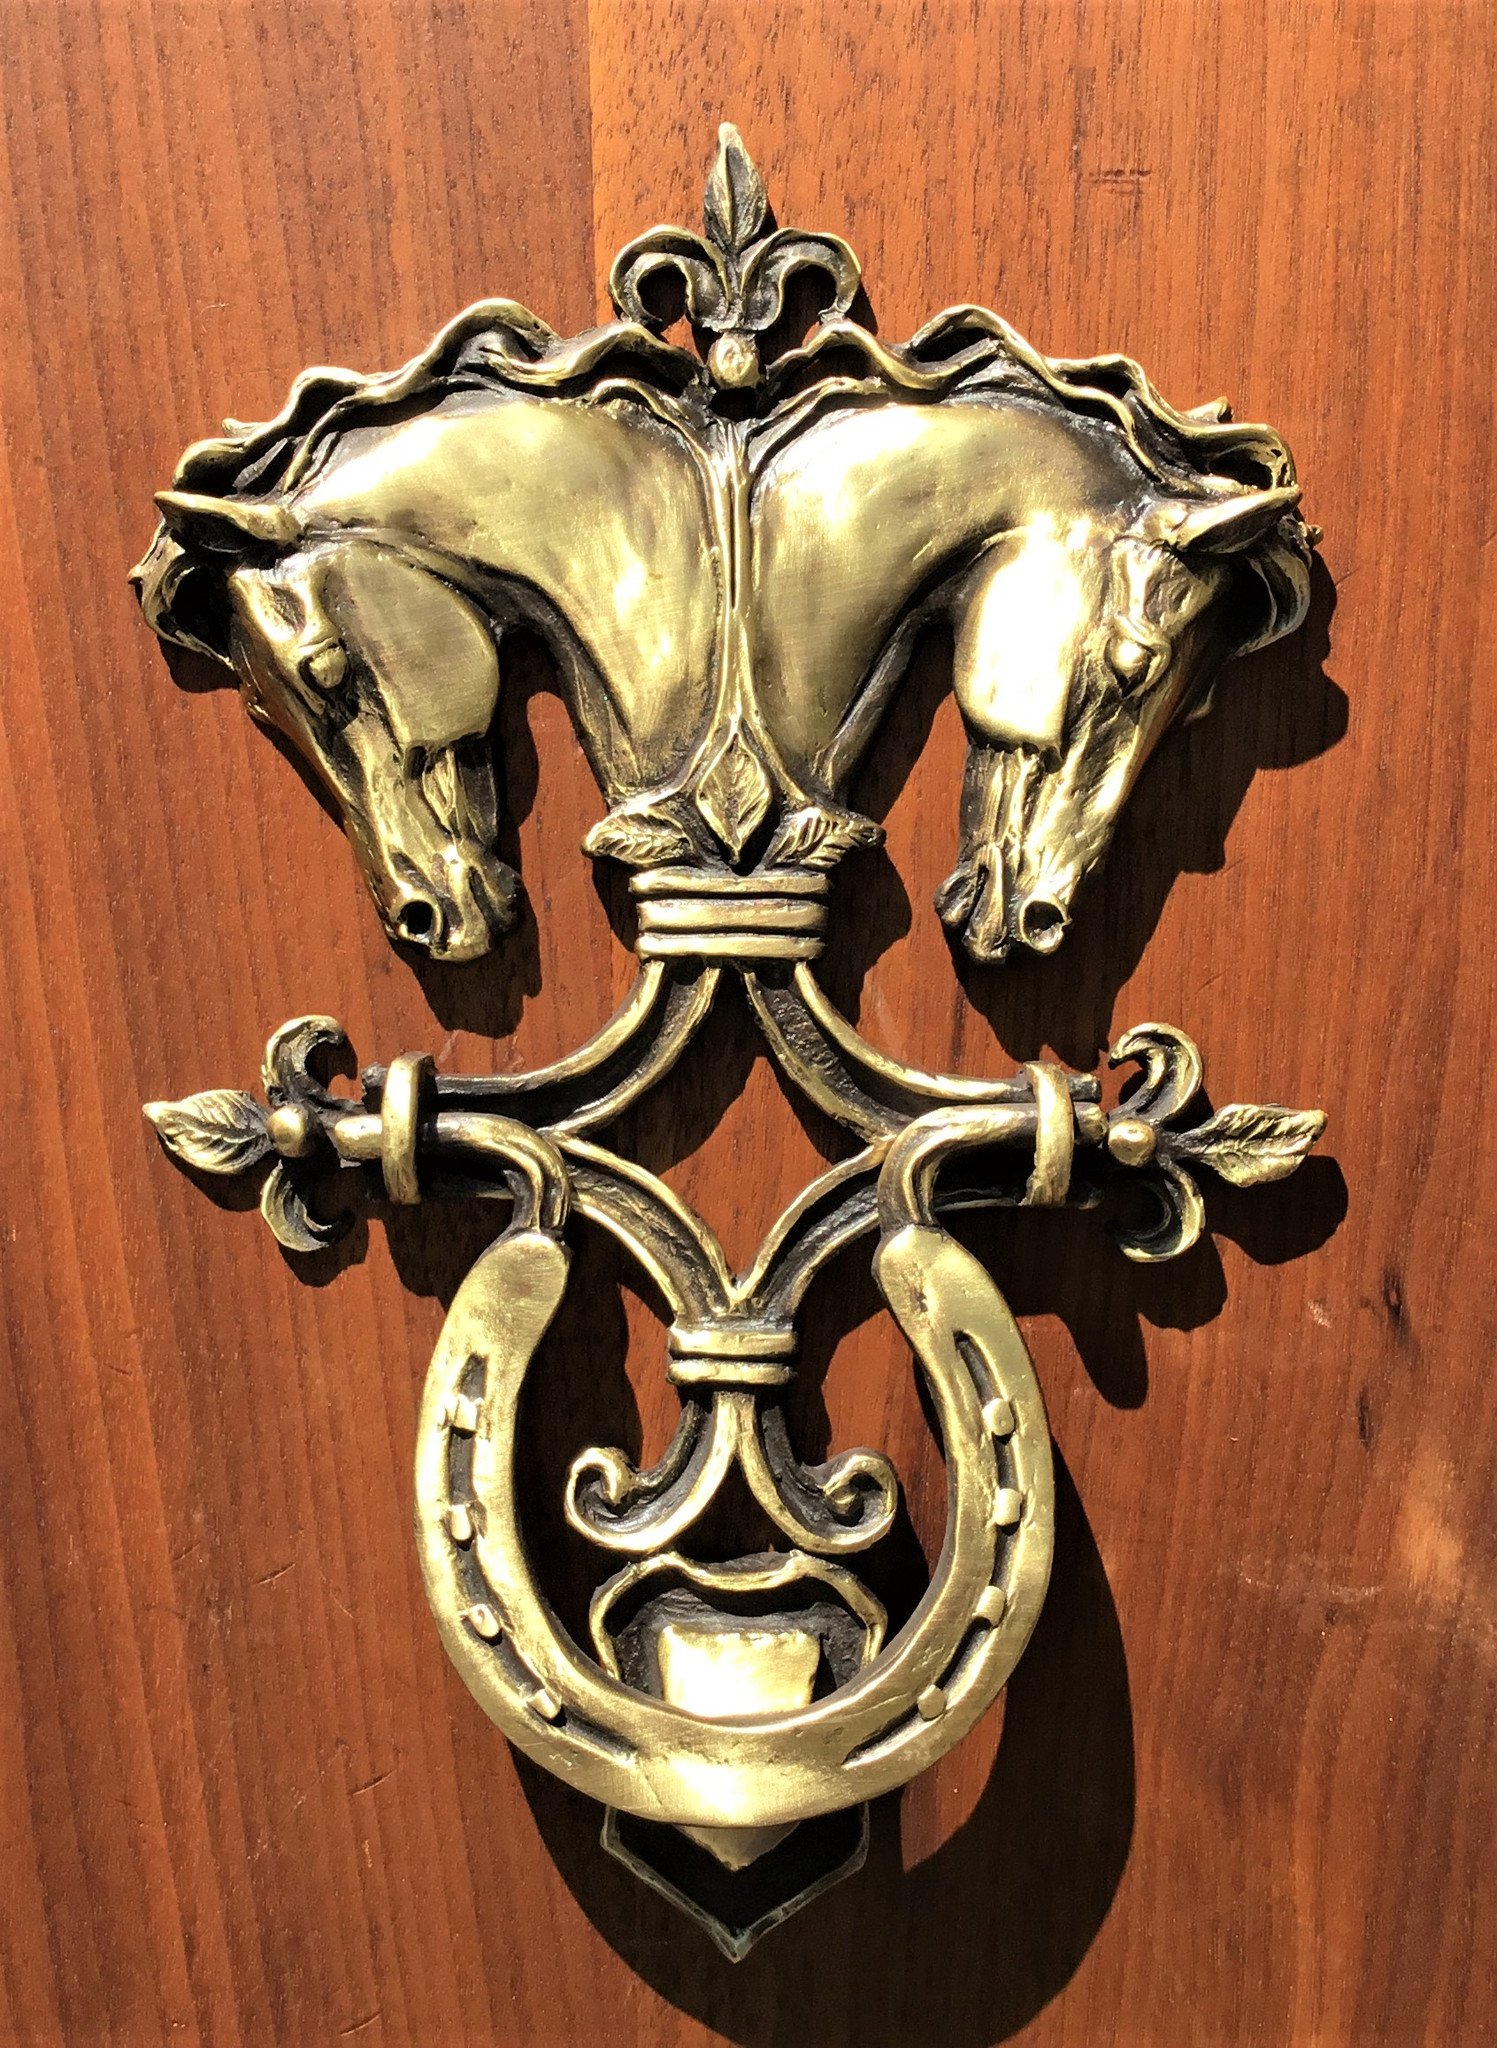 Horse head door knocker with classical design | Patricia Borum